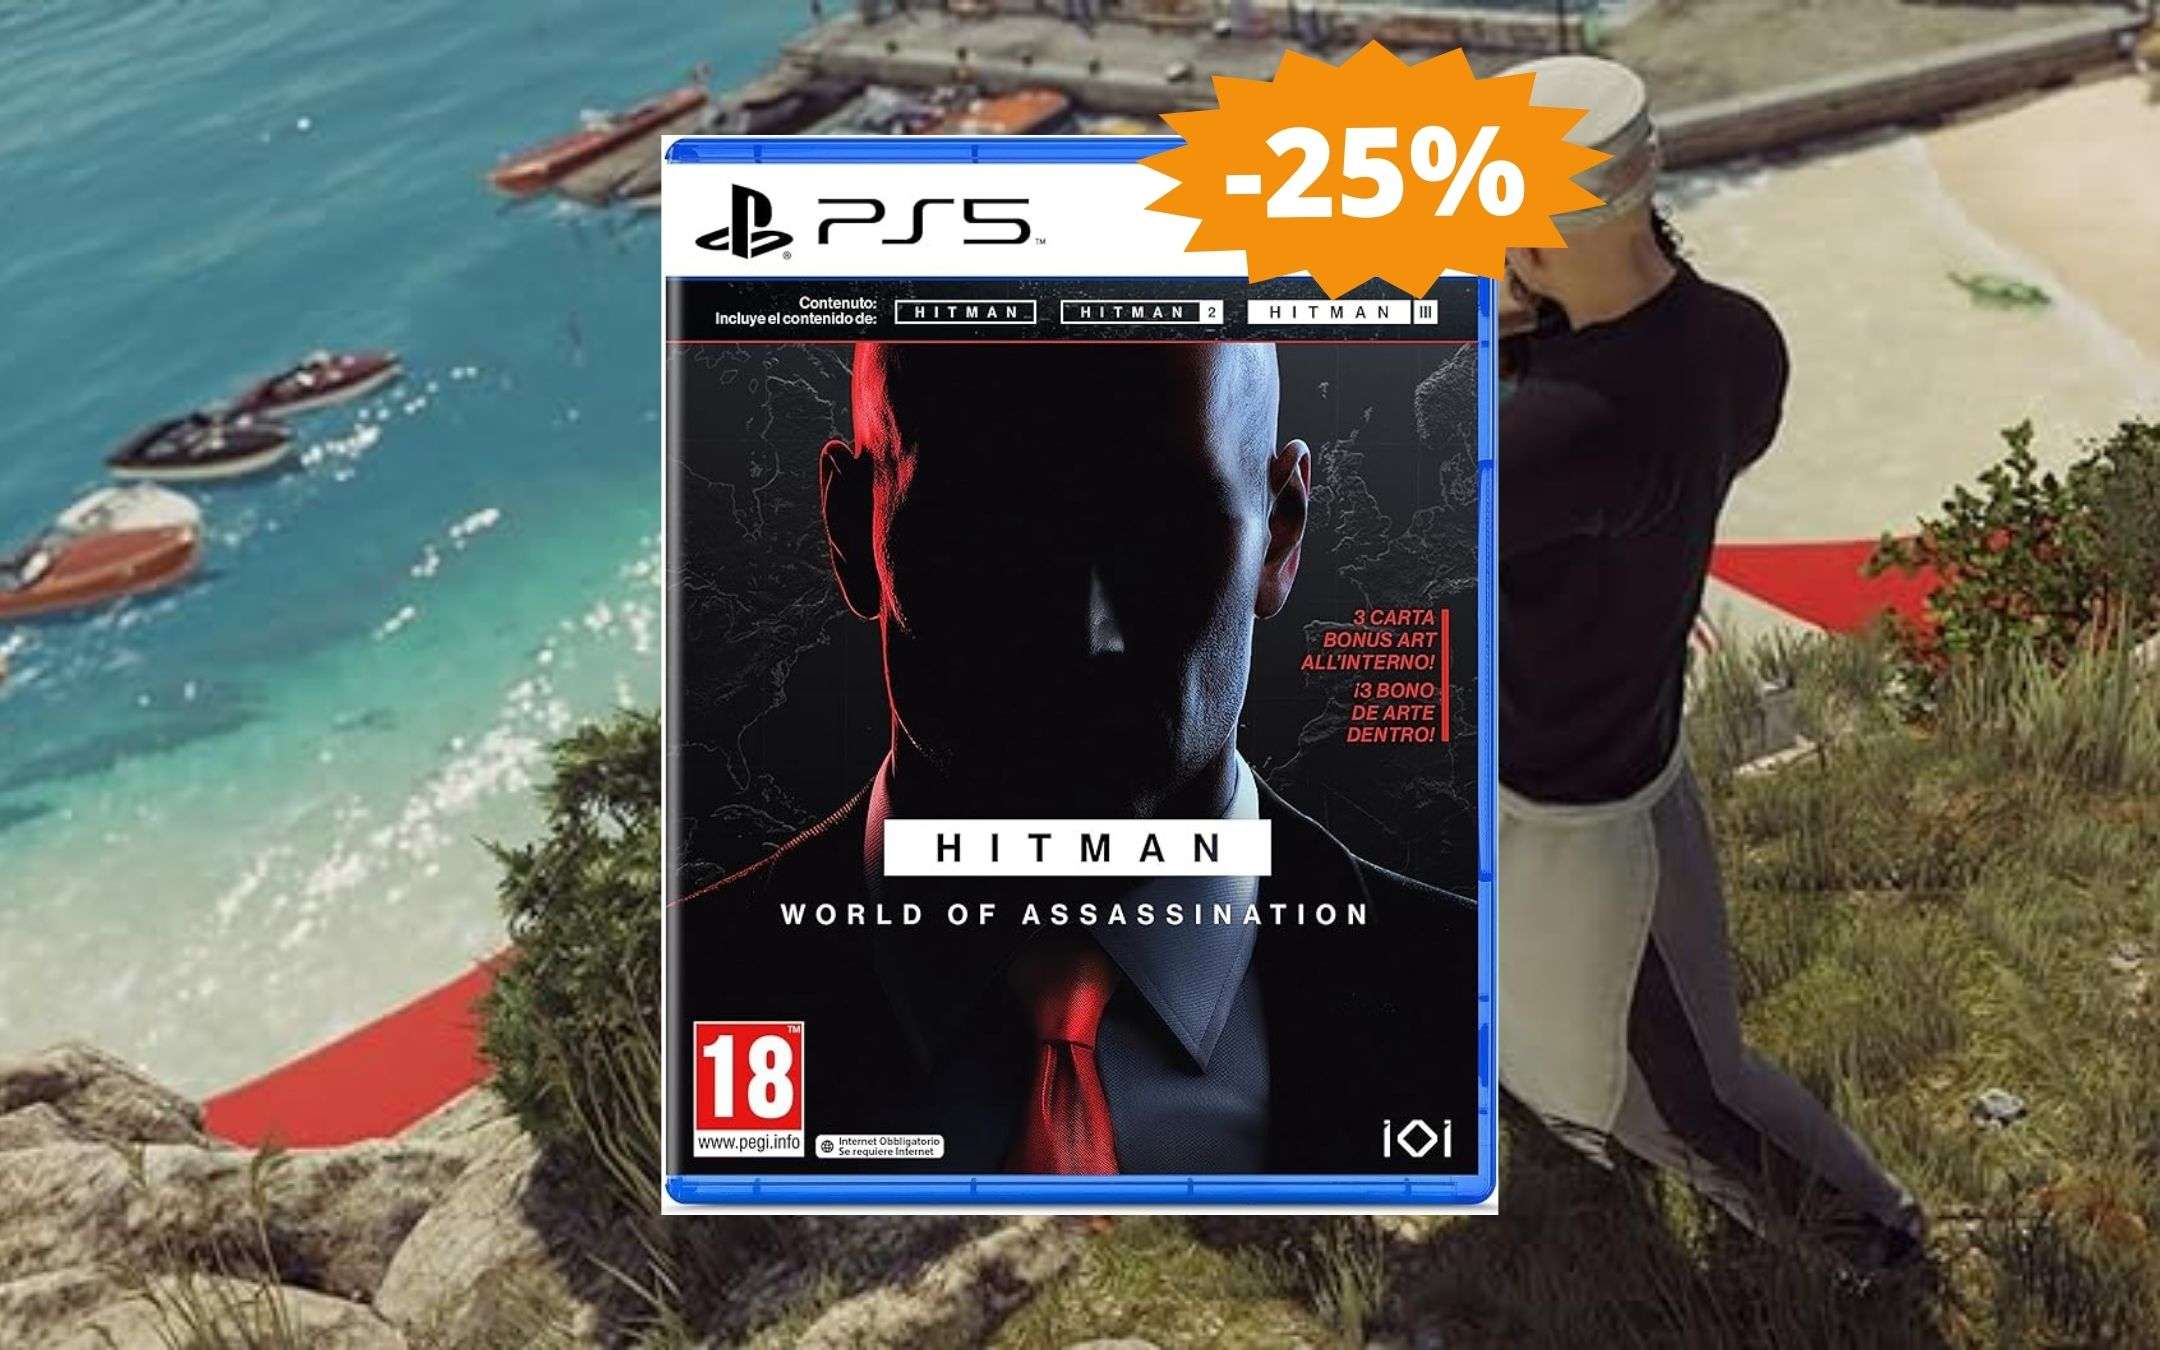 HITMAN World of Assassination per PS5: SUPER sconto del 25%